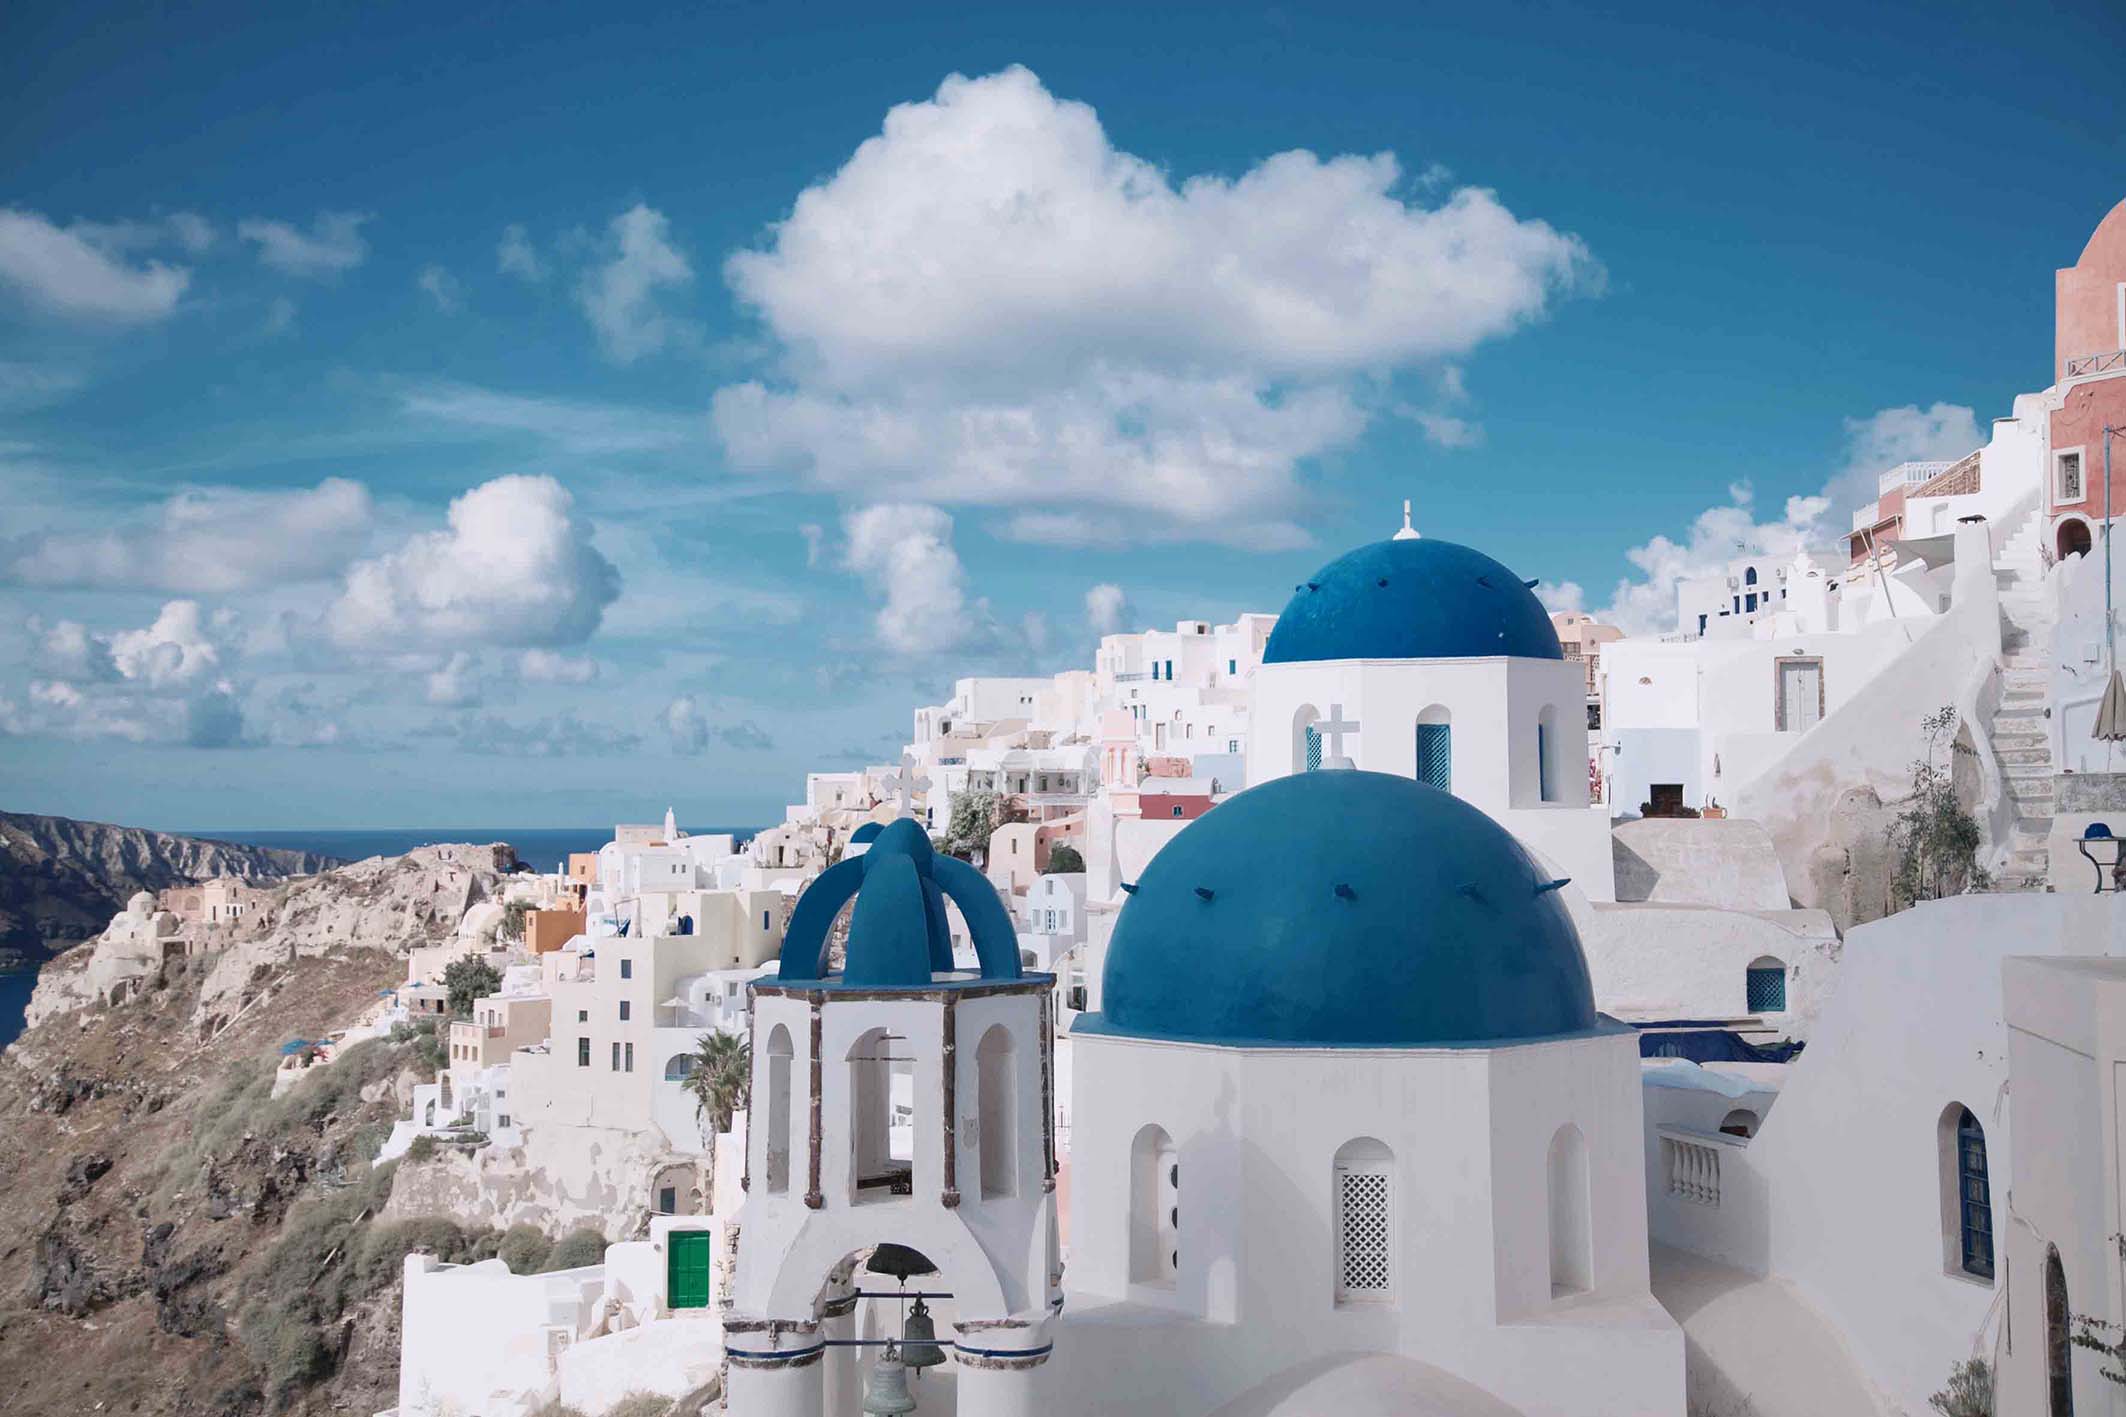 Vacanze in Grecia? Aspettate ad escluderla dalle mete possibili